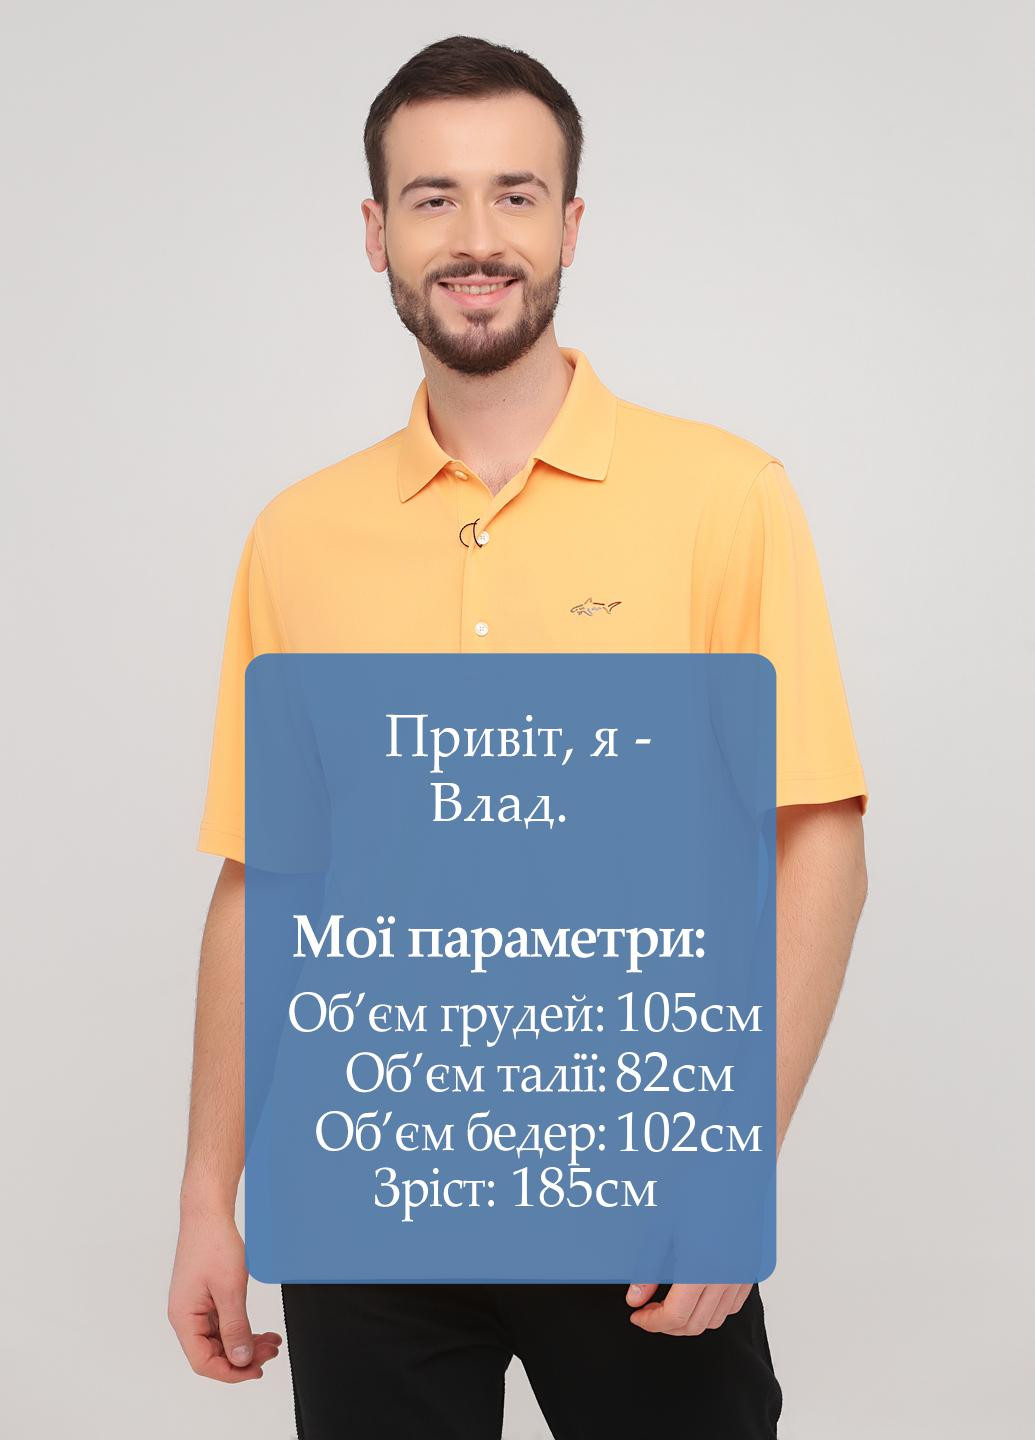 Оранжевая футболка-поло для мужчин Greg Norman однотонная